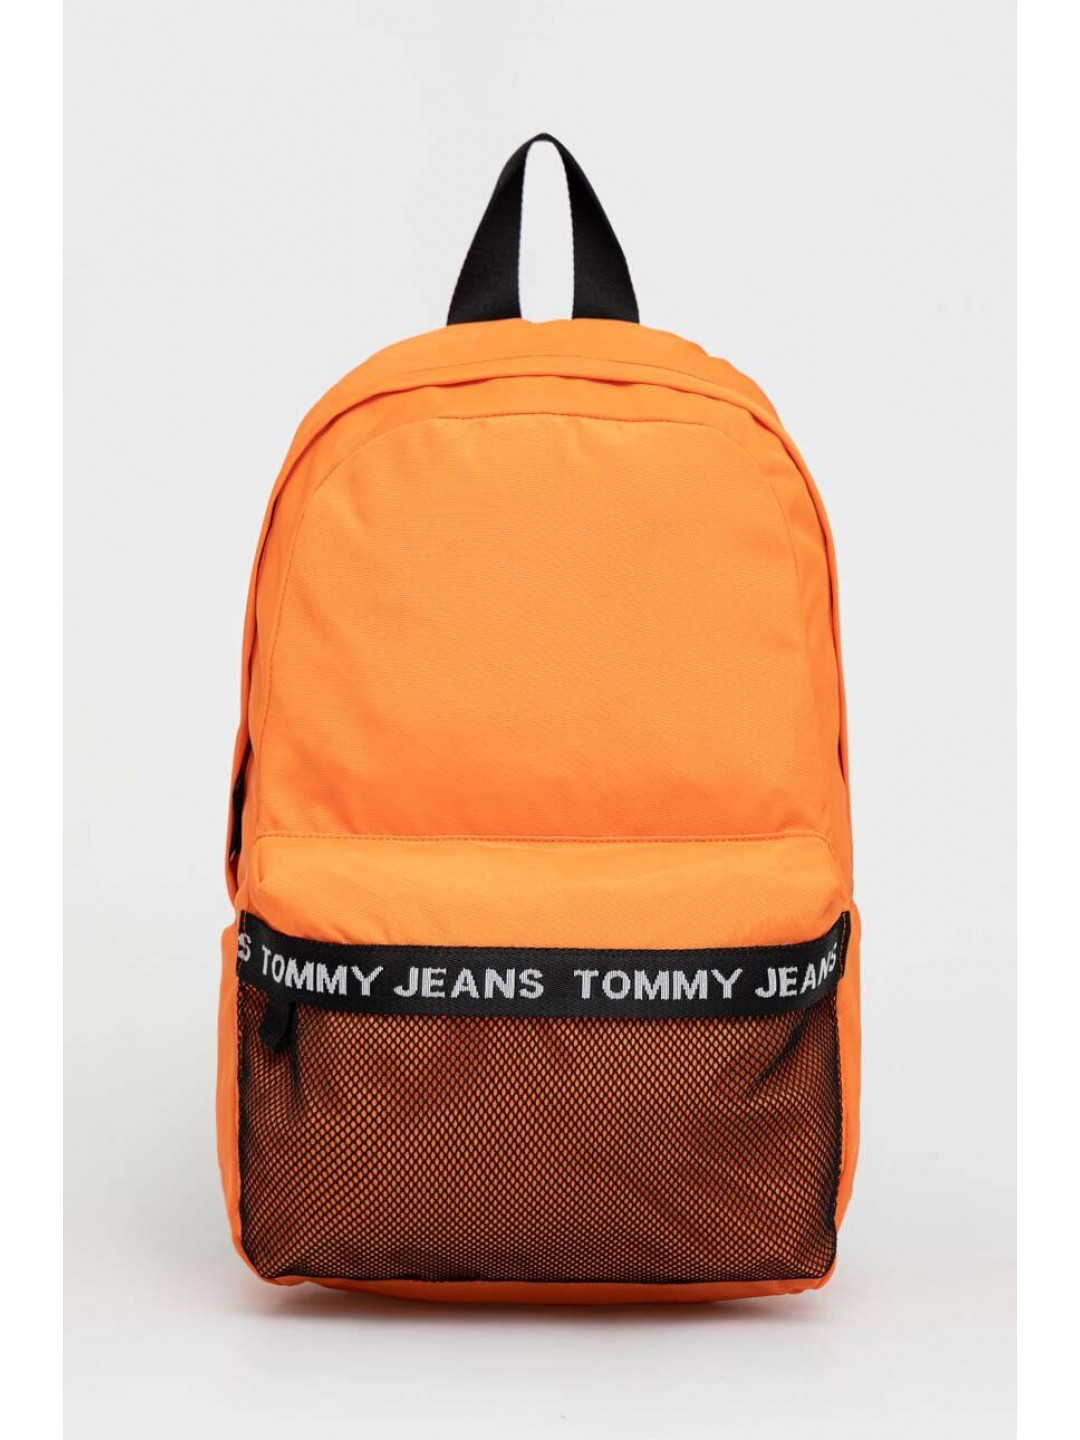 Batoh Tommy Jeans pánský oranžová barva velký s potiskem